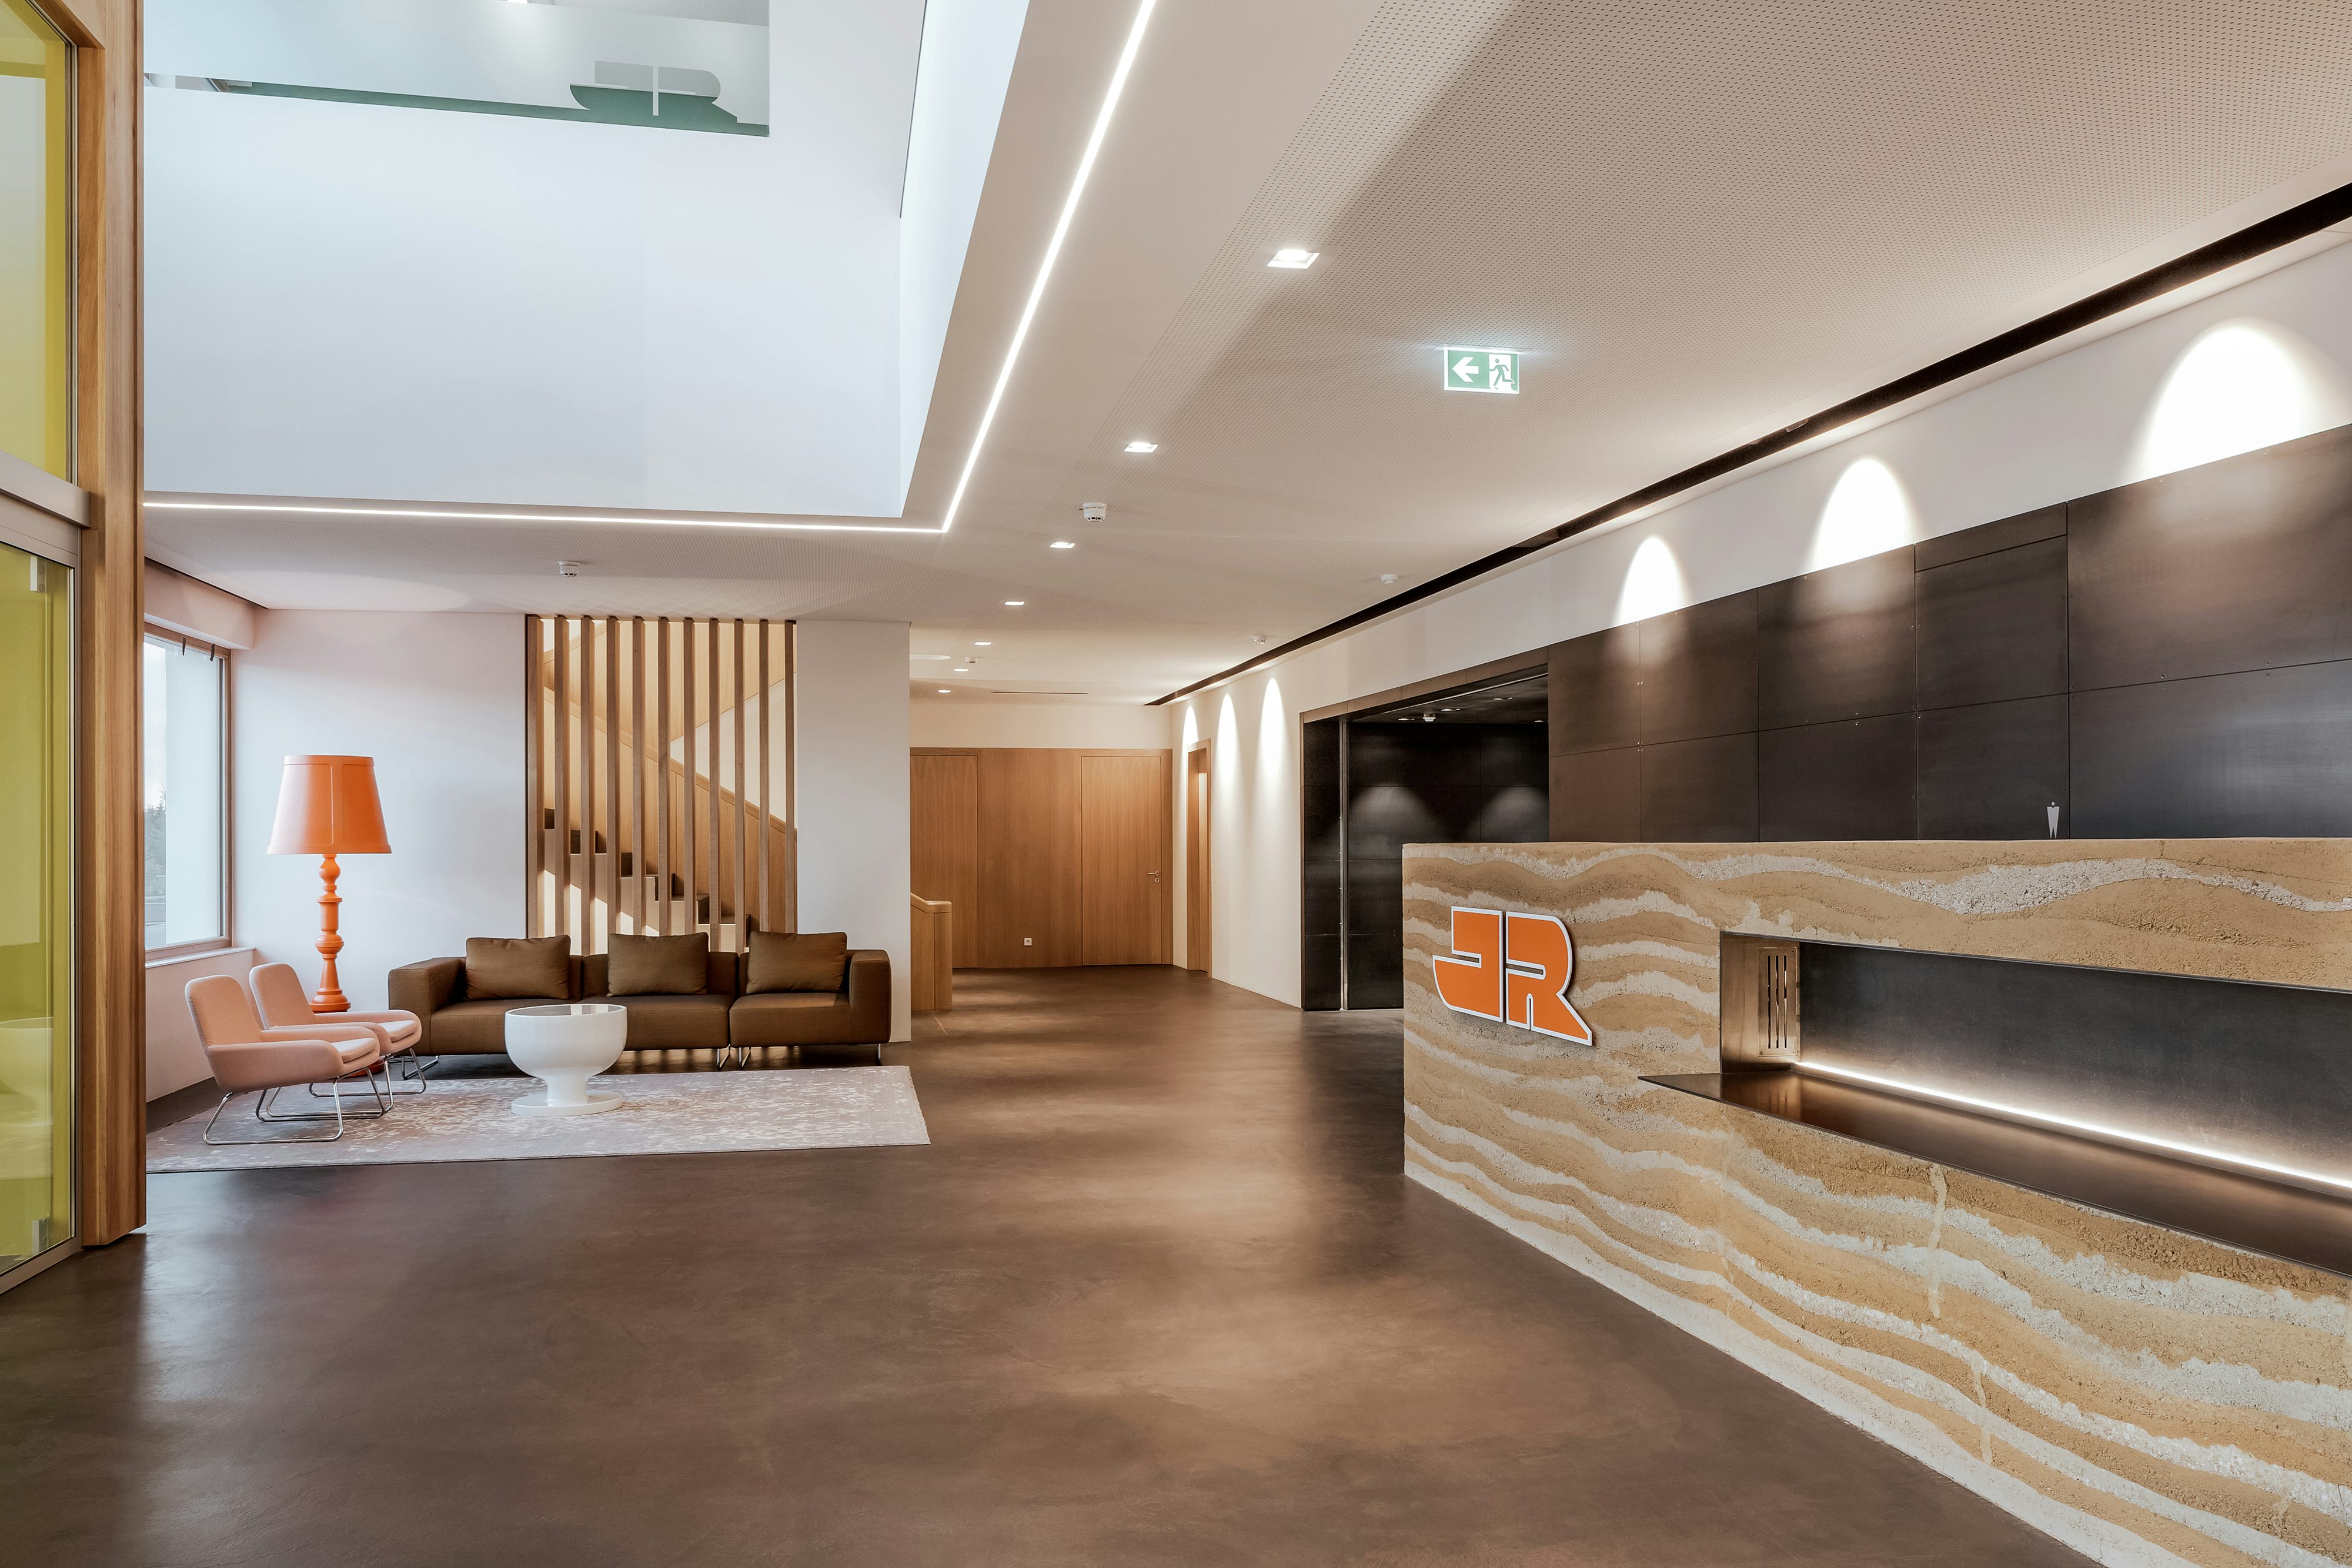 Rädlinger Standort in Windorf: moderner und lichtdurchfluteter Eingangsbereich des Bürogebäudes von innen mit Holzelementen